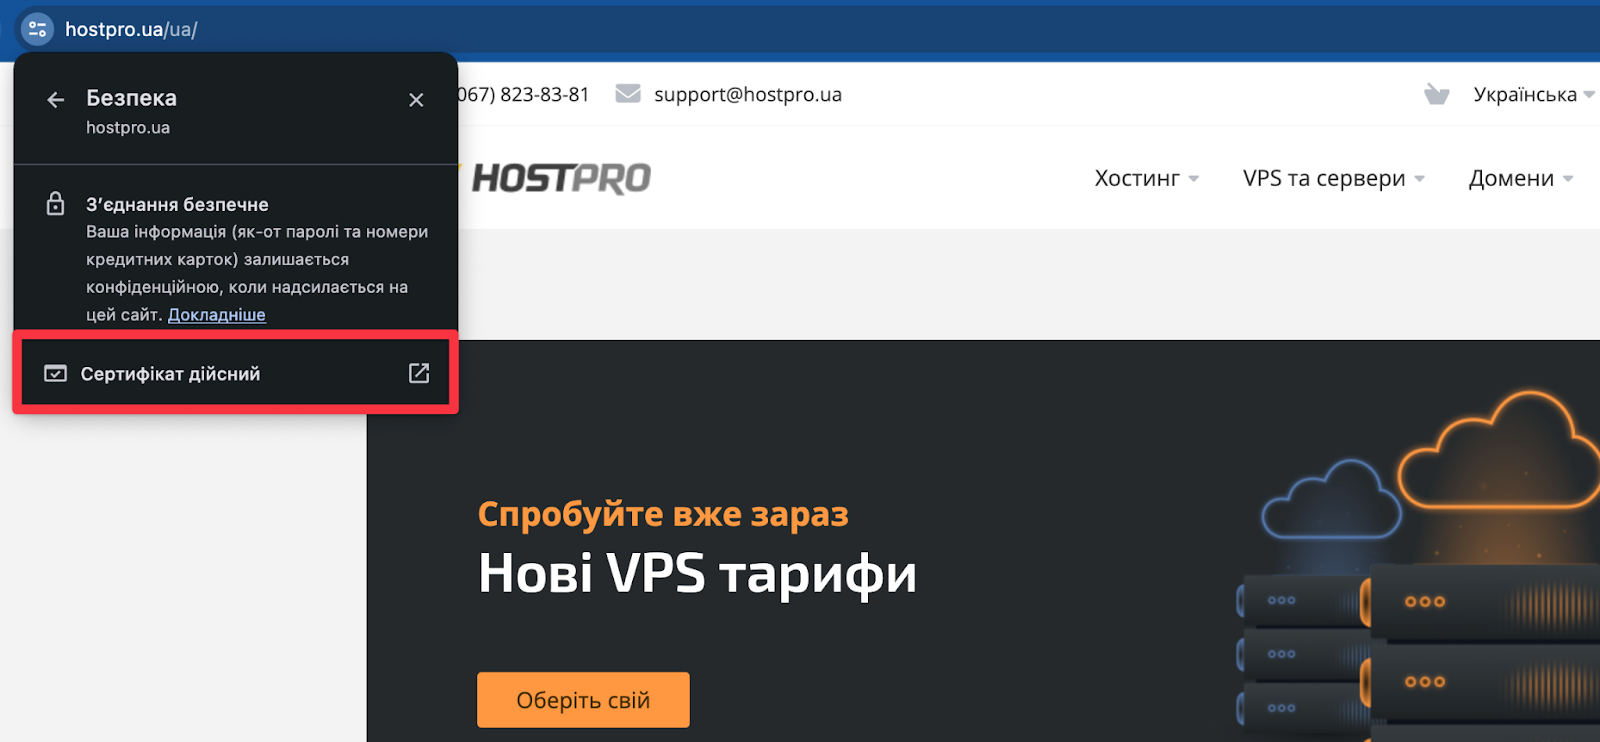 SSL-сертификат на сайте. Где посмотреть | Блог HostPro